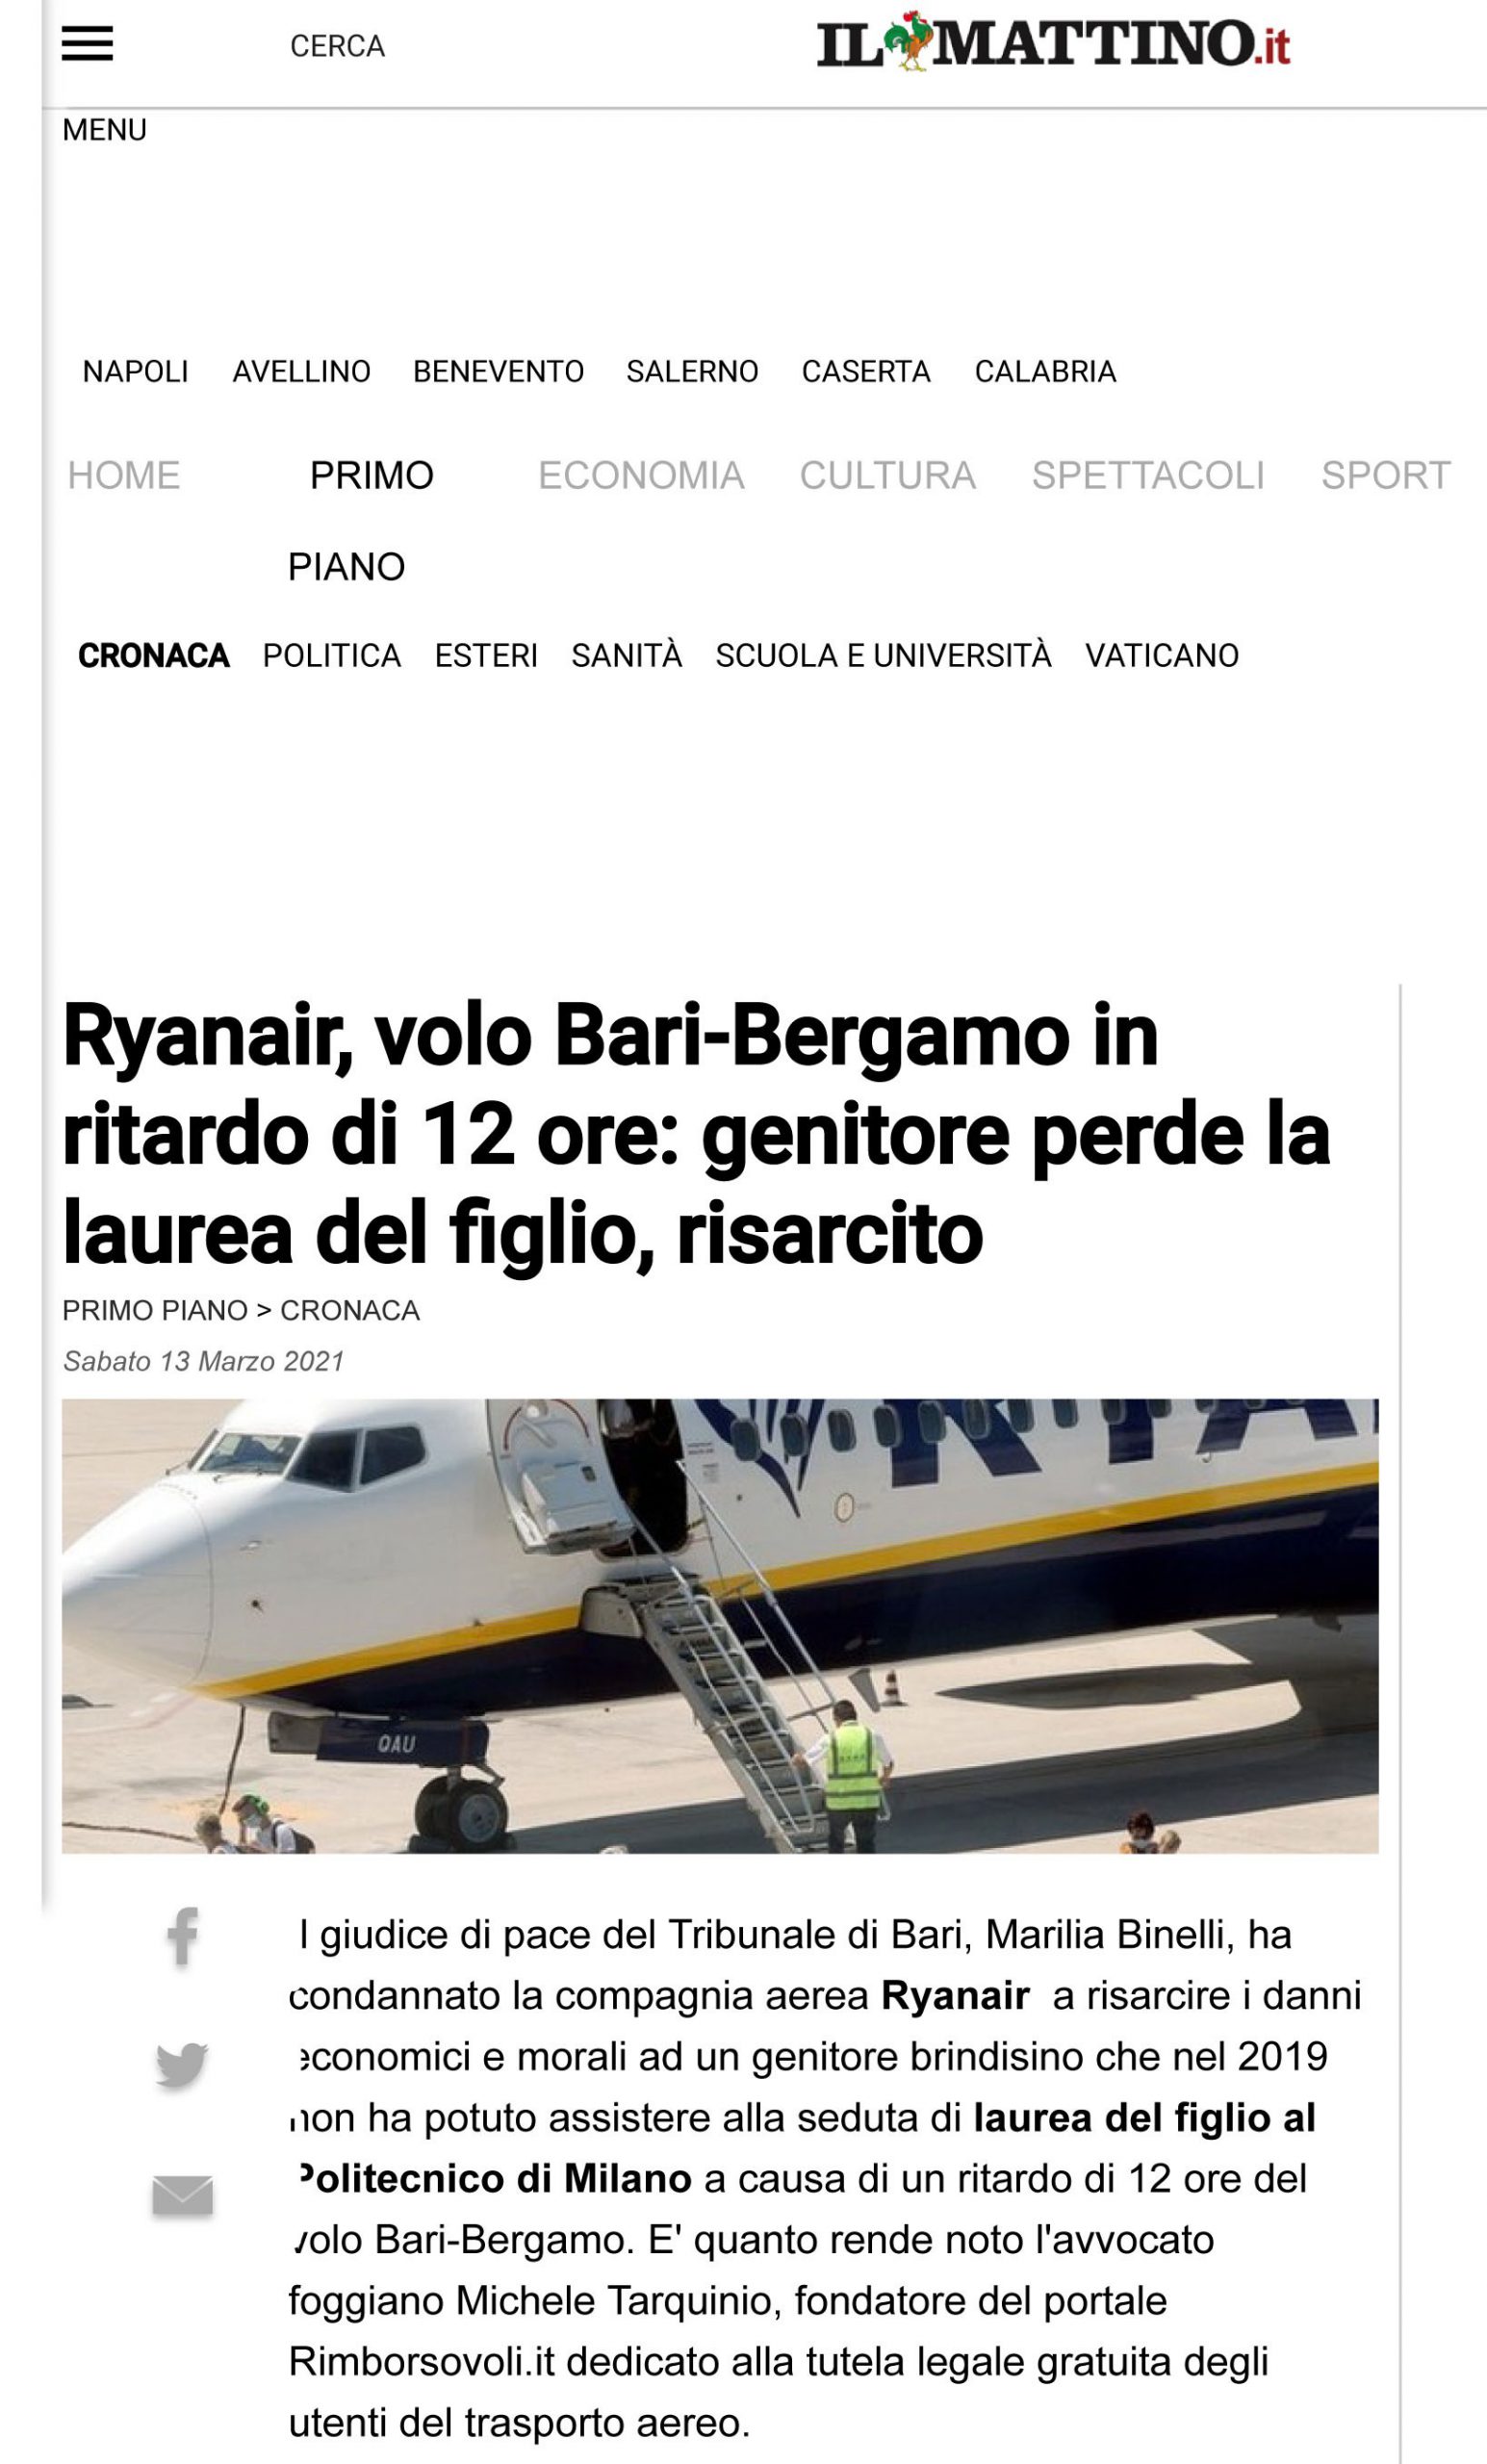 Ryanair, volo Bari-Bergamo in ritardo di 12 ore: genitore perde la laurea del figlio, risarcito